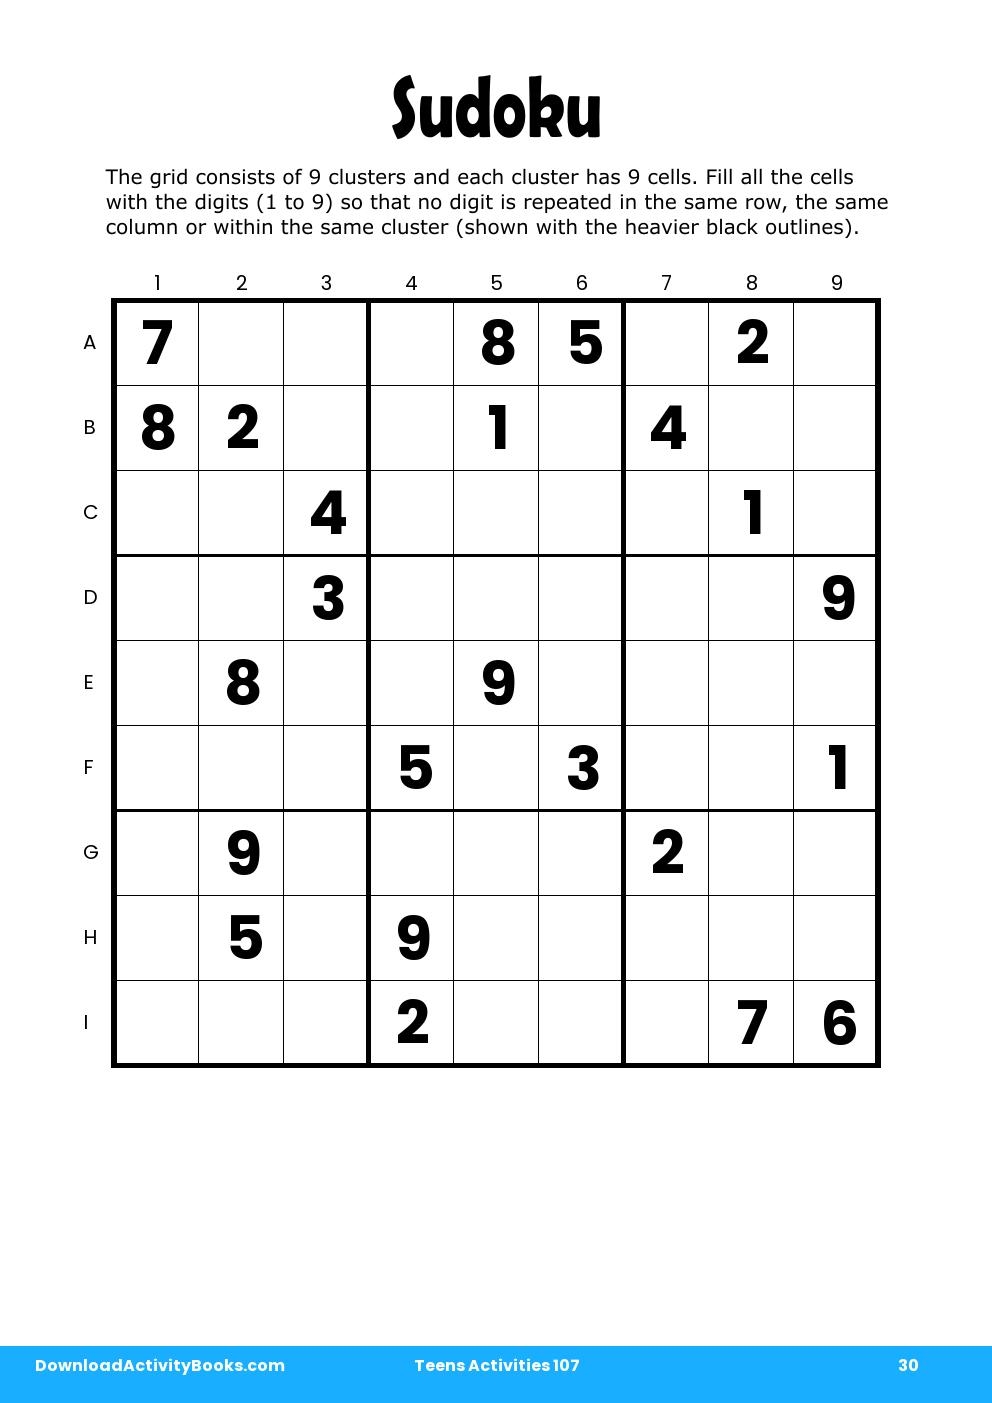 Sudoku in Teens Activities 107